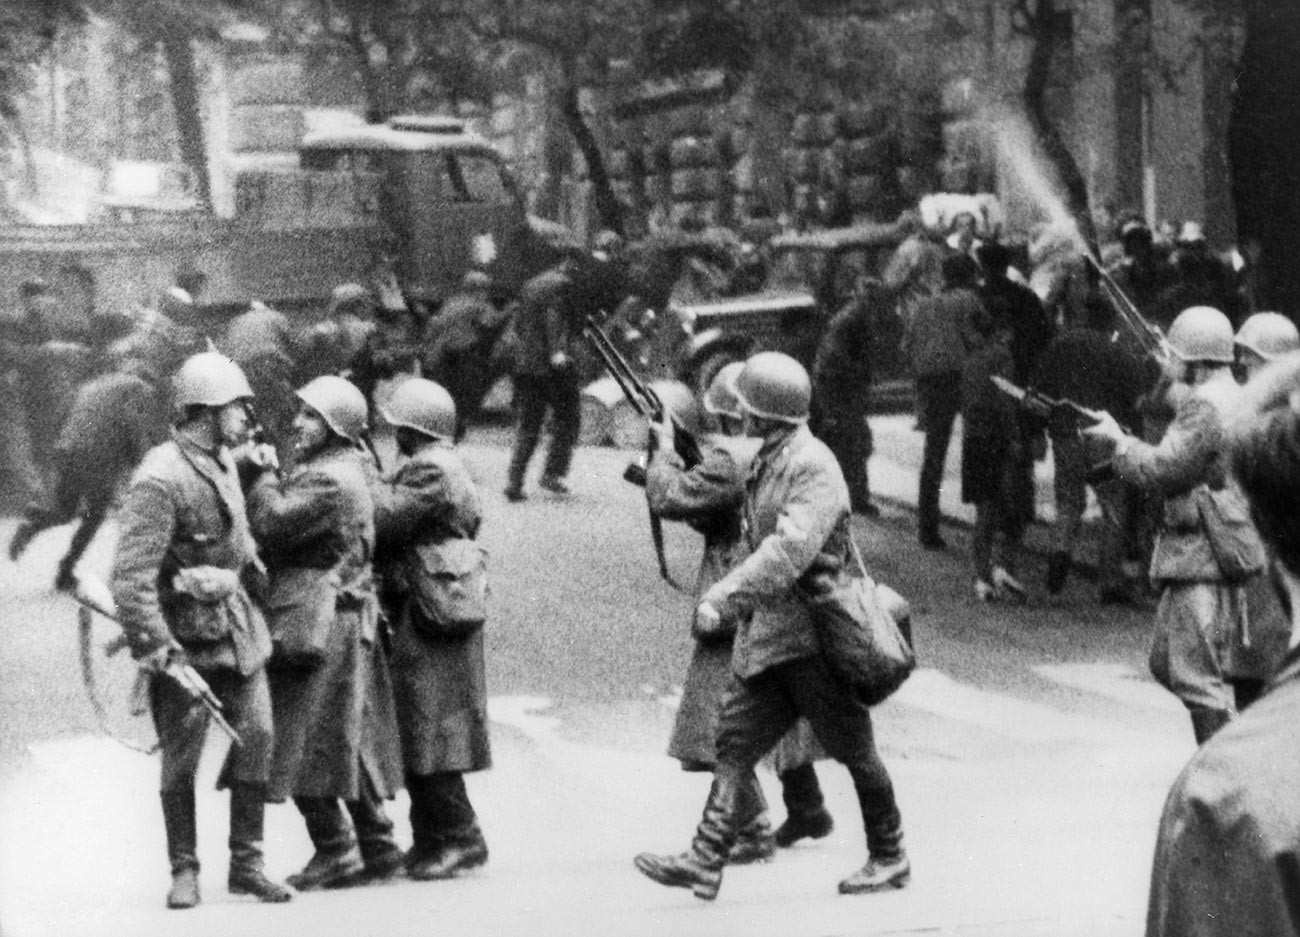 Praško proljeće – Suzbijanje invazije trupa zemalja Varšavskog pakta na Čehoslovačku. 